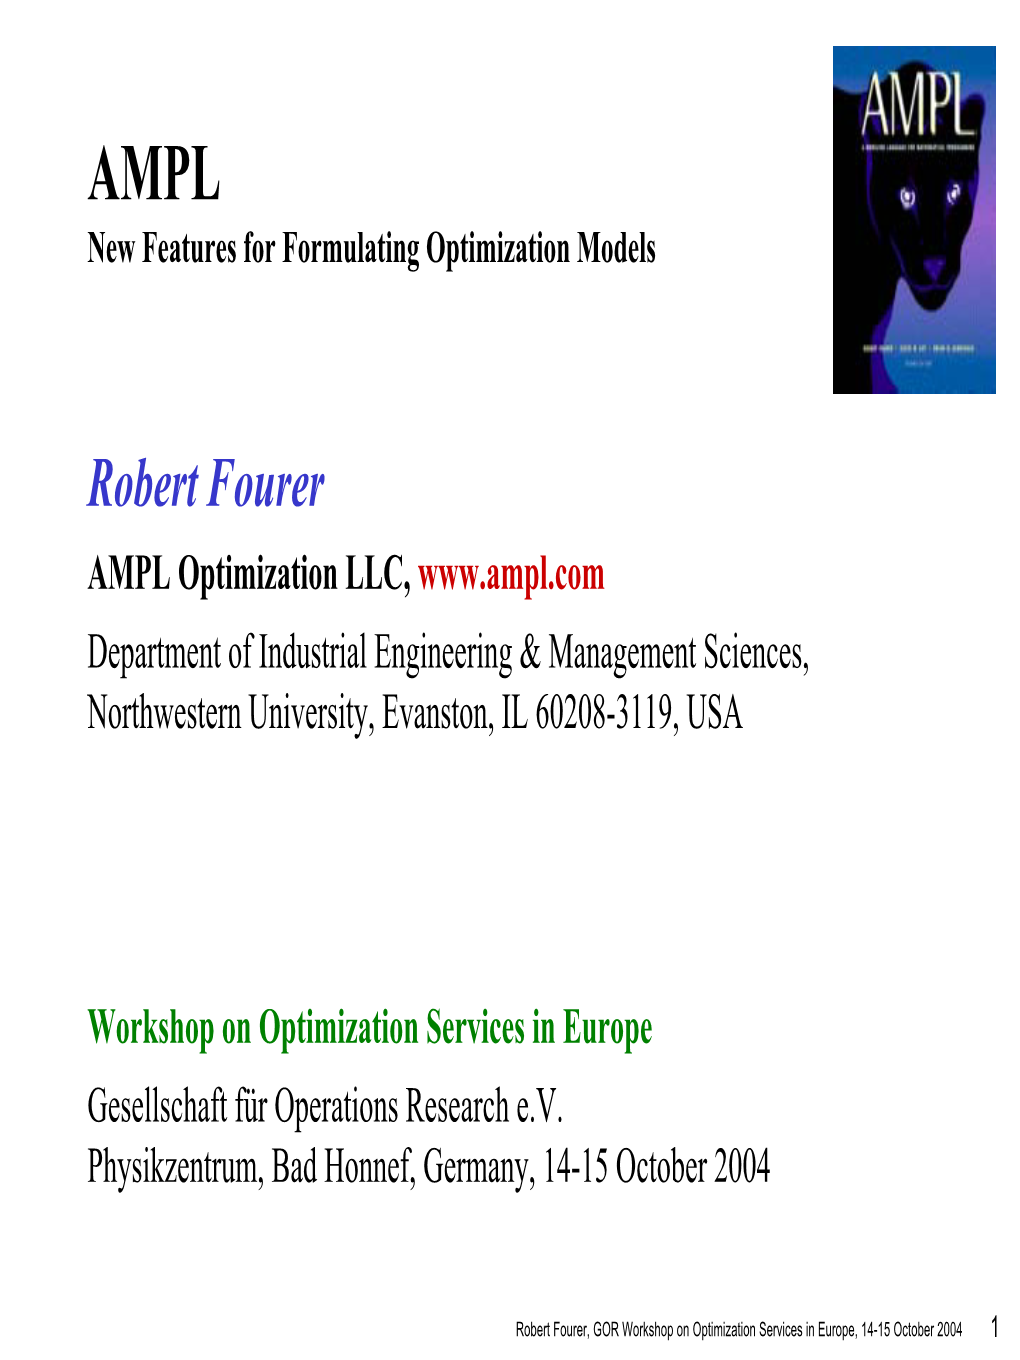 AMPL – Robert Fourer